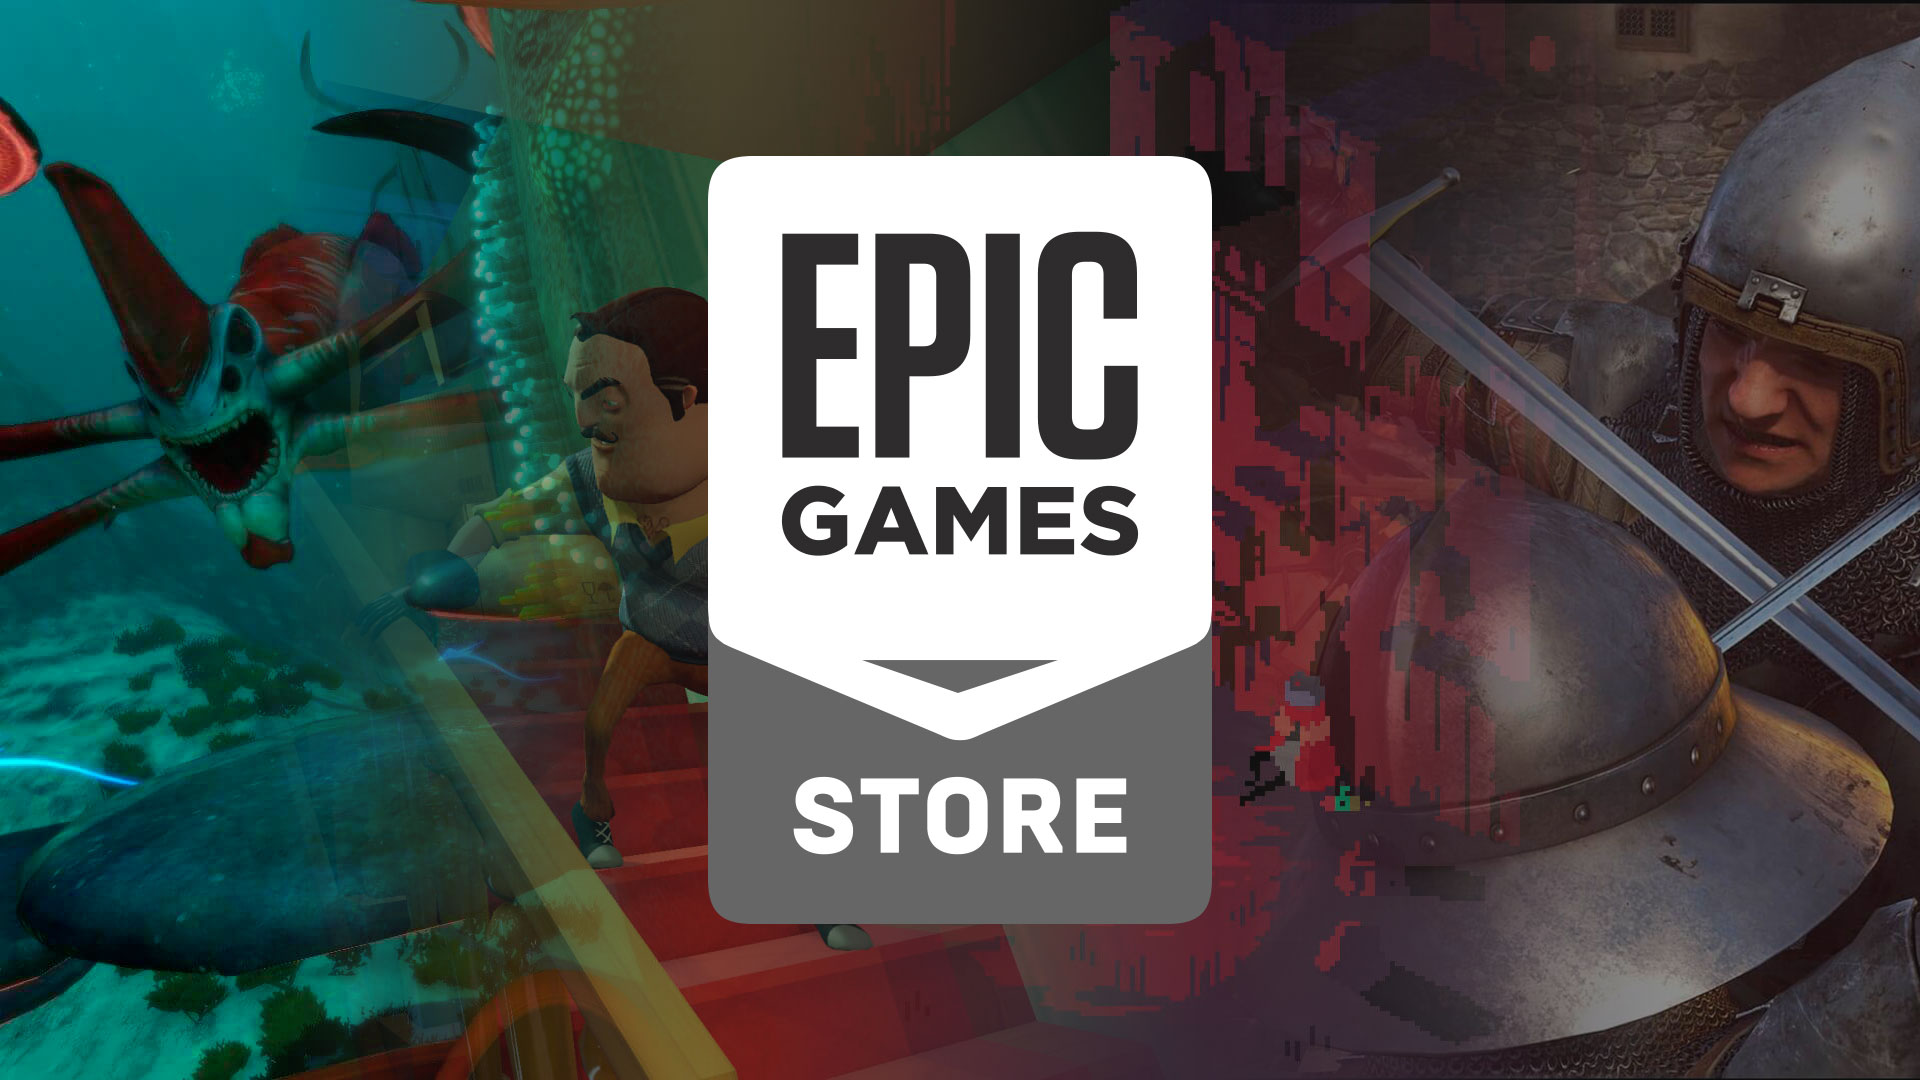 Die kostenlosen Spiele von Epic für nächste Woche wurden enthüllt